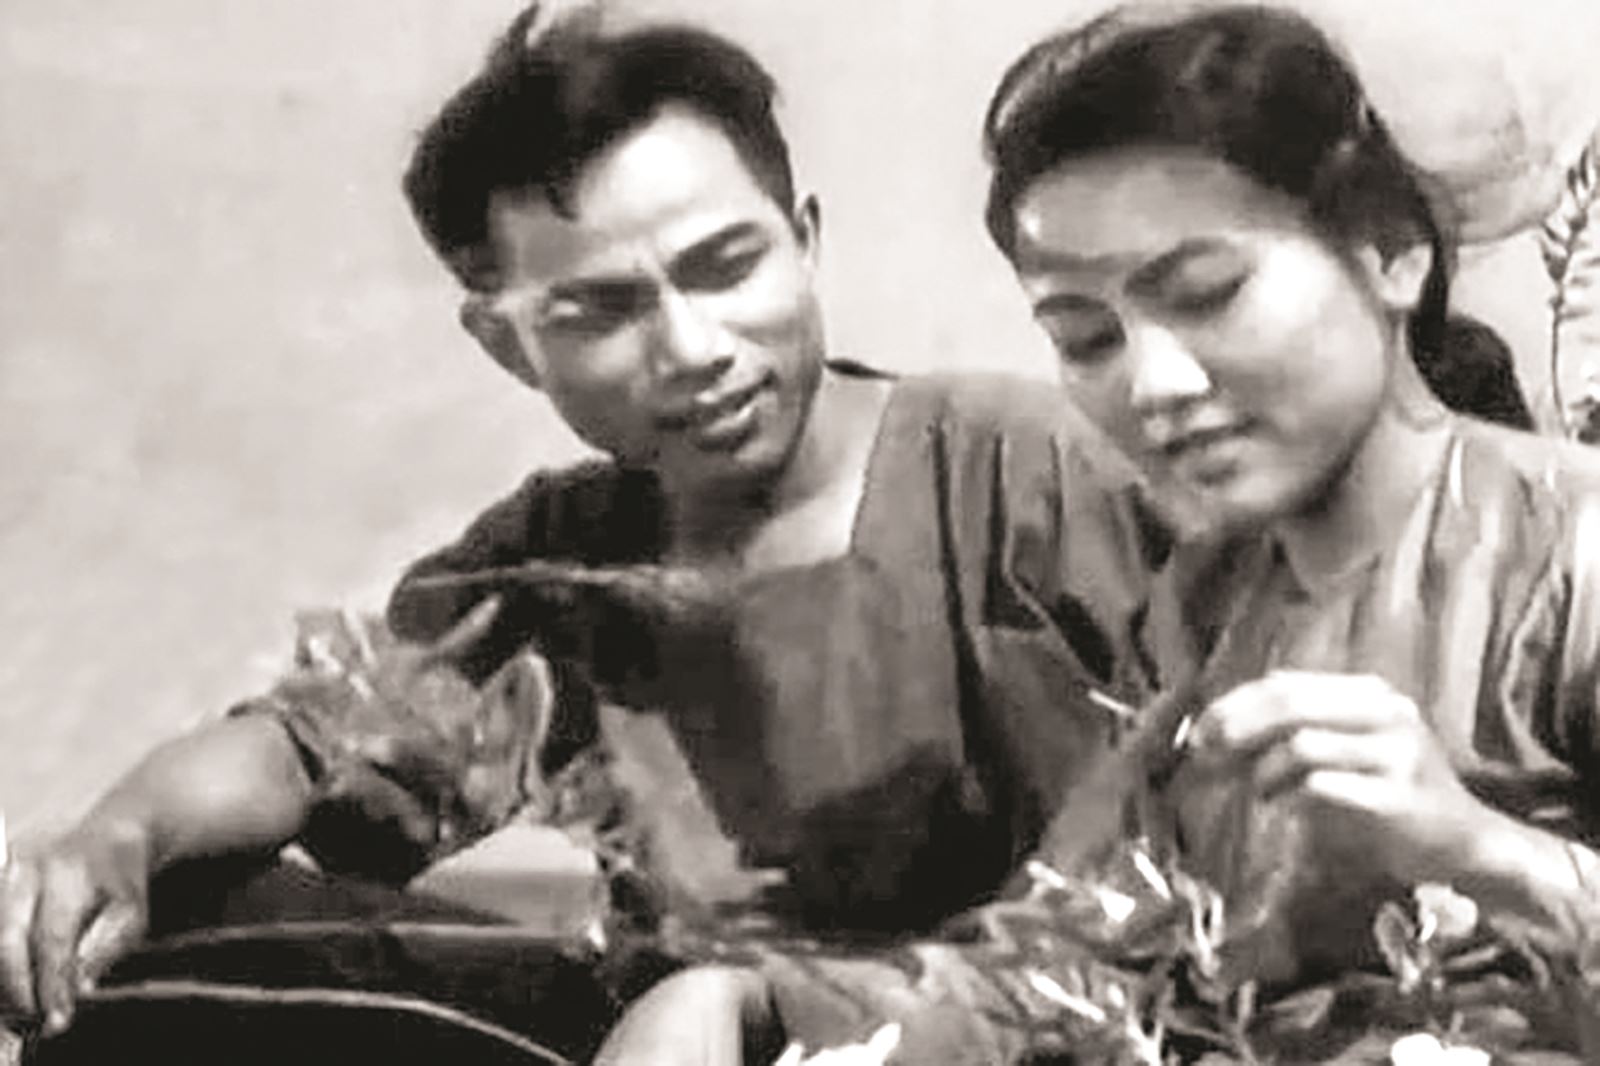 Đề tài chiến tranh và hậu chiến trong dòng chảy của điện ảnh Việt Nam